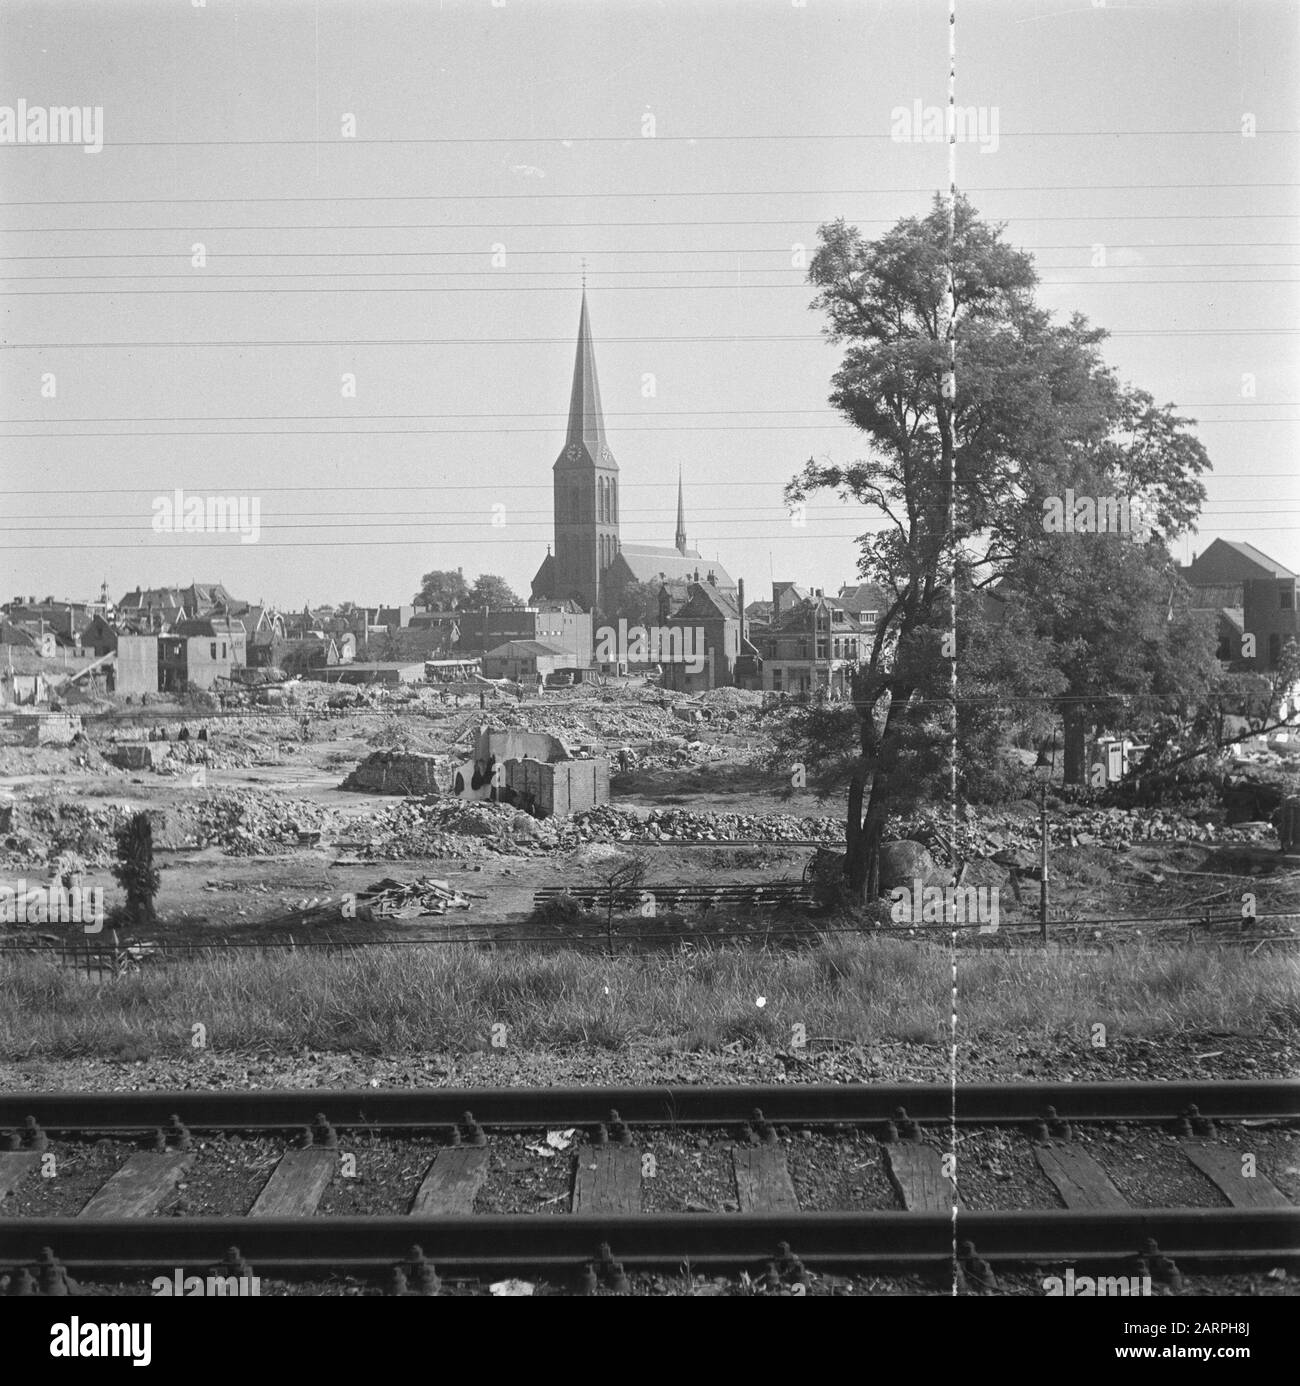 Vernielingen: Hengelo  View of the Basilica of St. Lambert Date: 1945 Location: Hengelo, Overijssel Keywords: Vernielingen, World War II Stock Photo